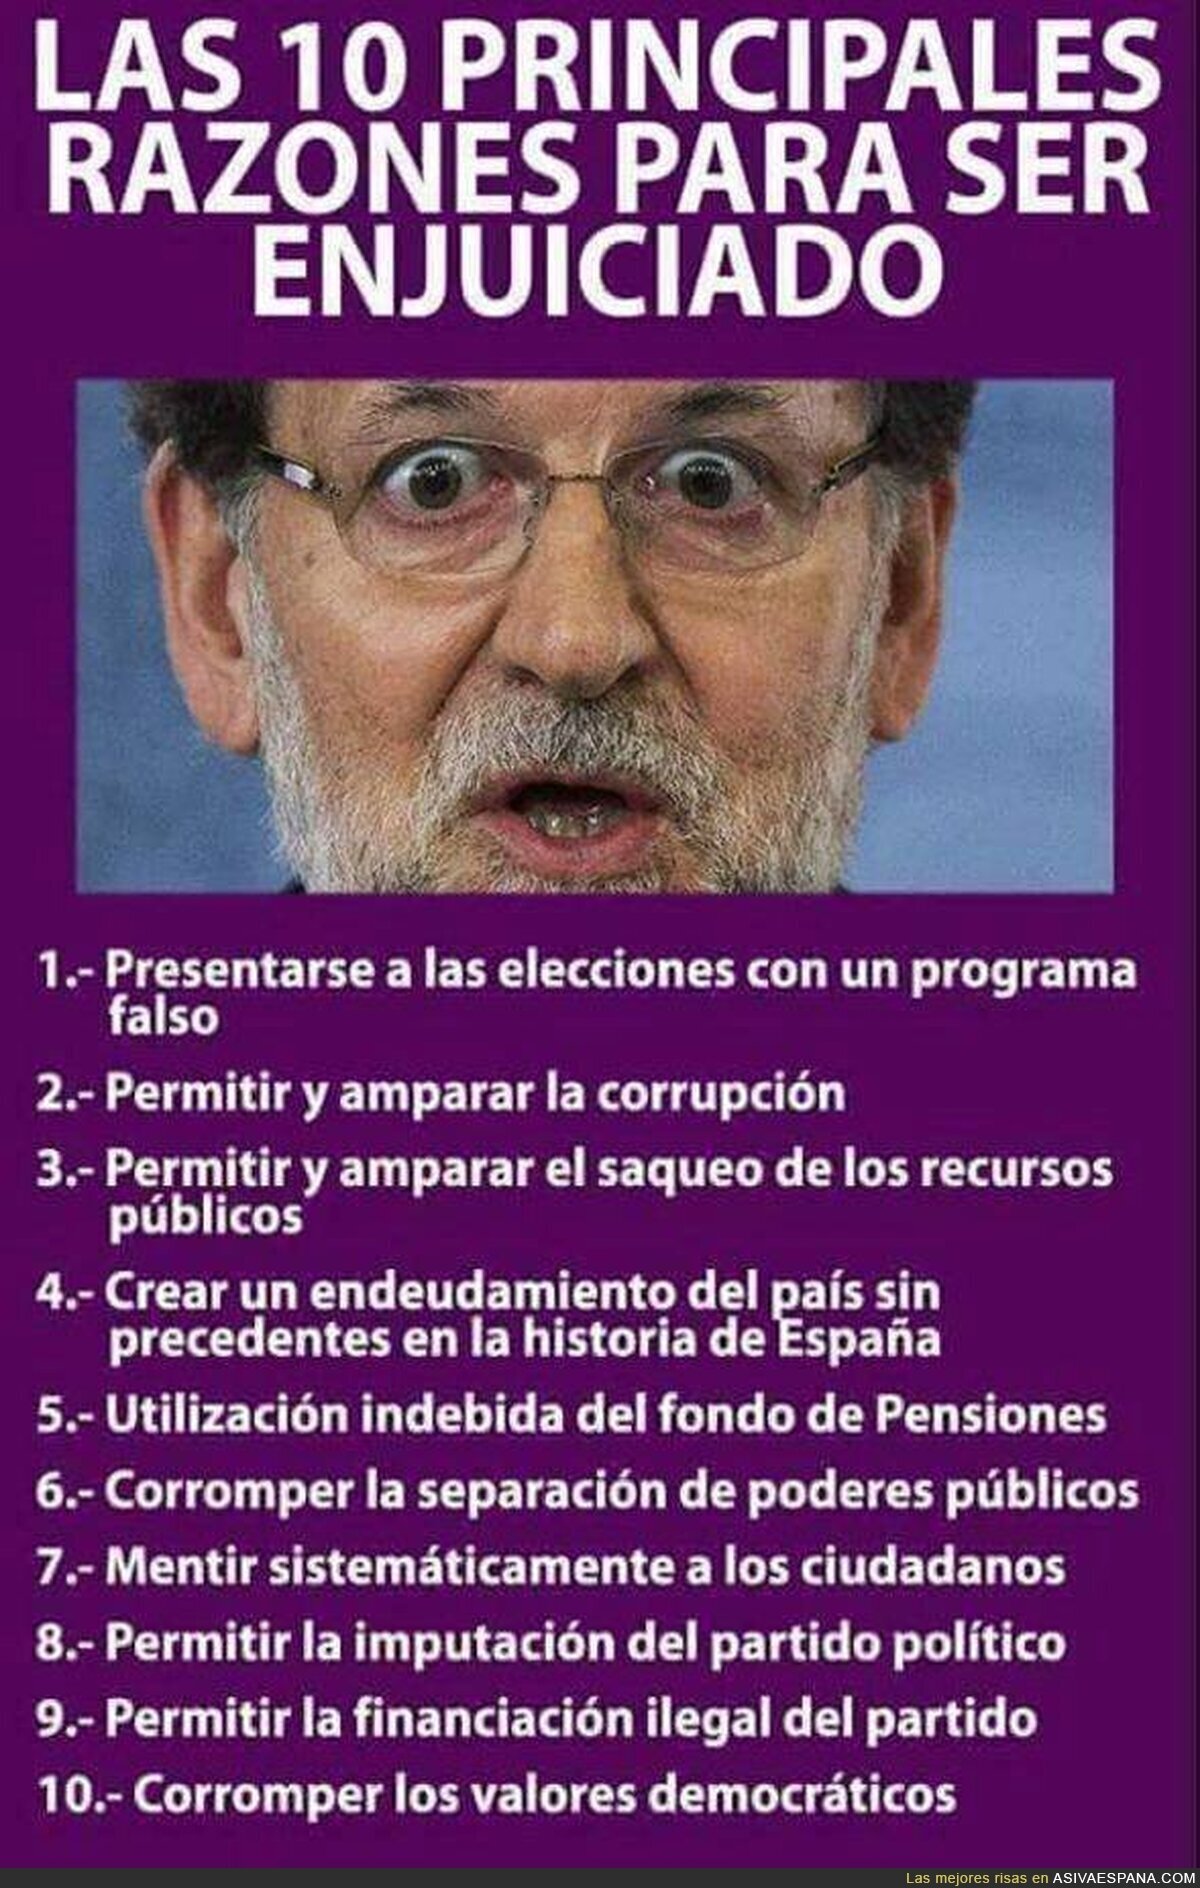 Los motivos para llevar a juicio a Mariano Rajoy